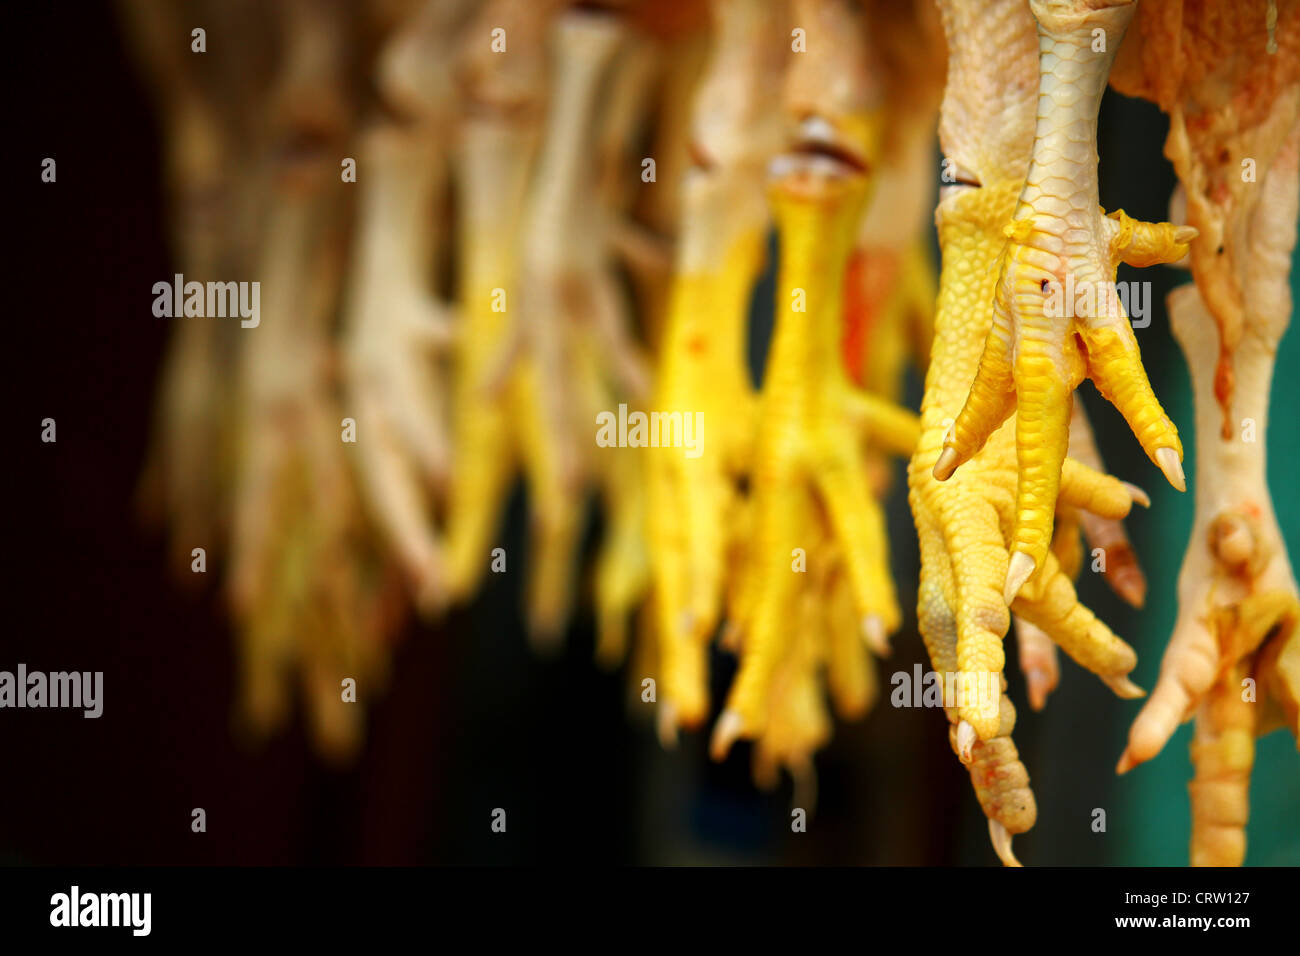 Cosce di pollo alla visualizzazione in un negozio di carne in Shivaji Nagar, Bangalore, India Foto Stock